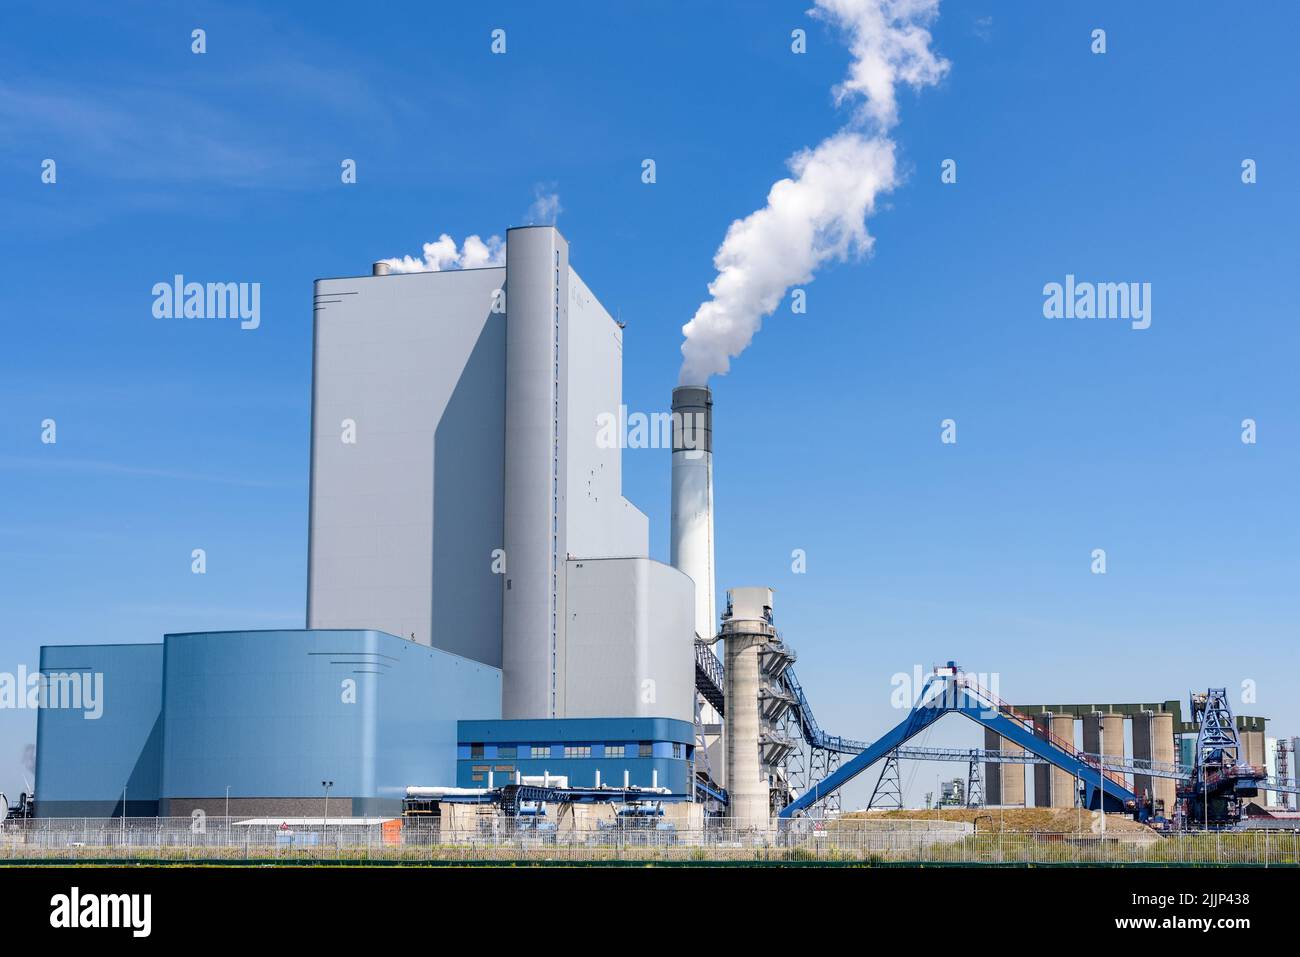 Vista de una gran central de carbón y biomasa en un claro día de verano Foto de stock